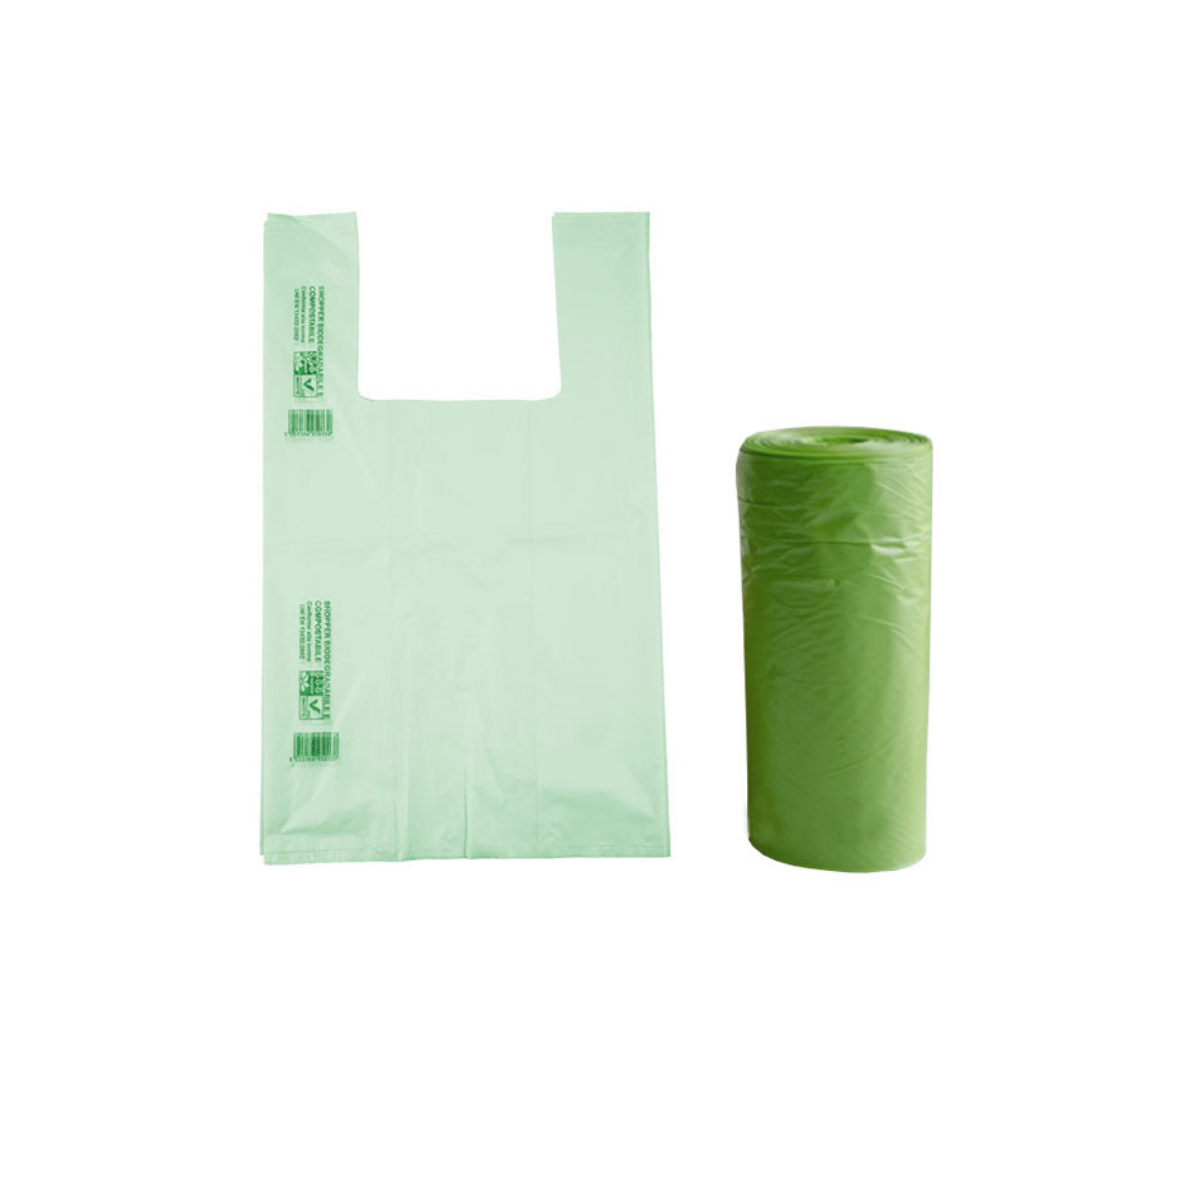 1 rotolo) Shopper biodegradabili € 10,20 + Iva